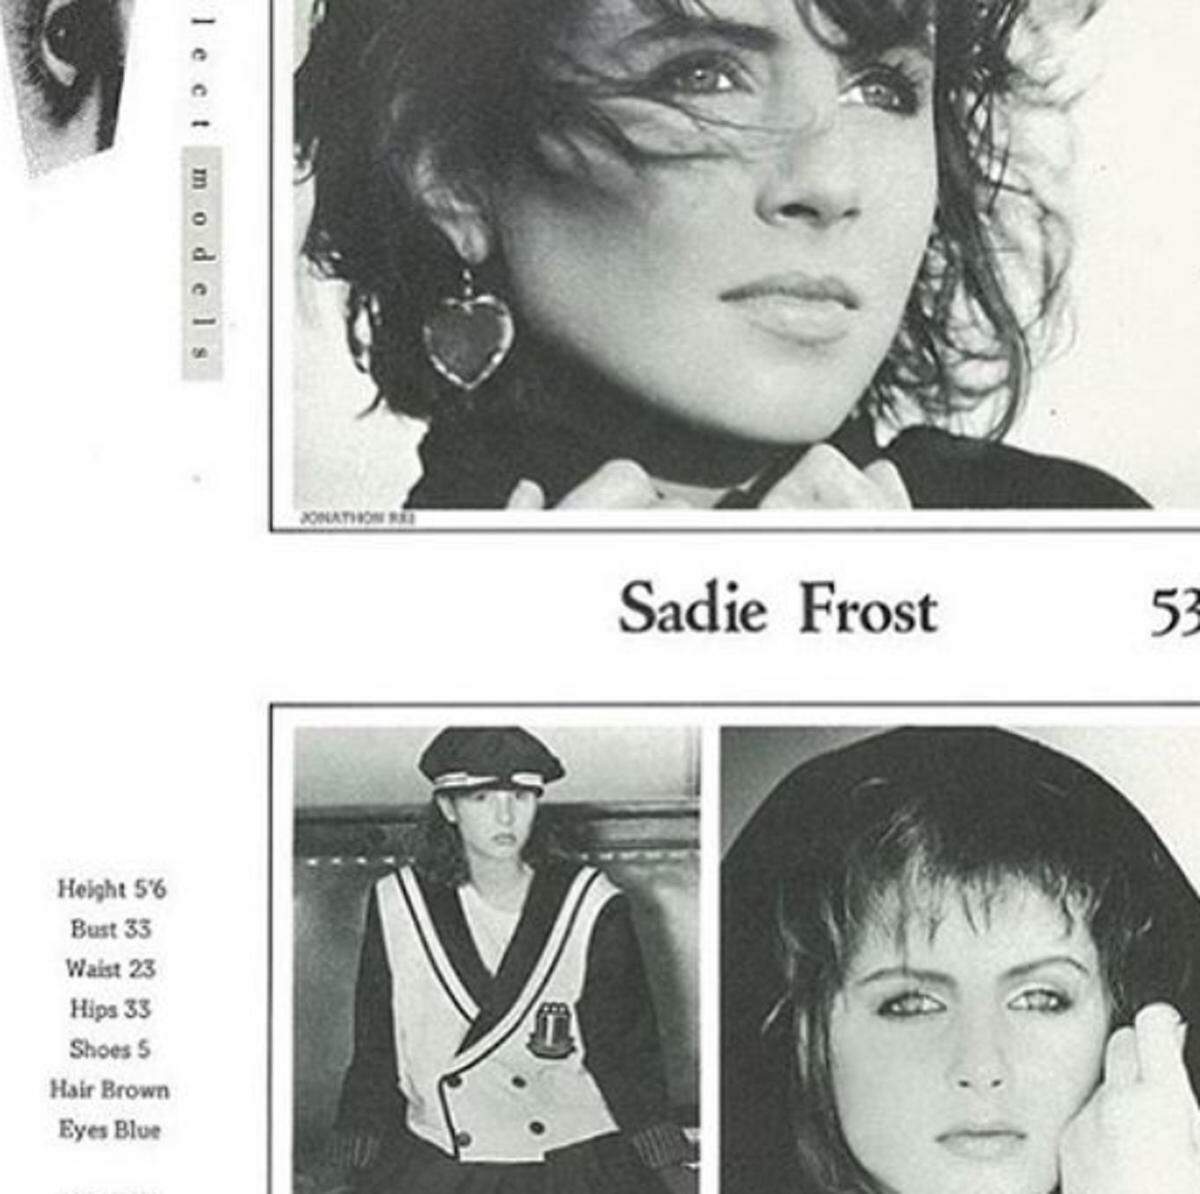 Model-Talent kann man der 16-Jährigen nicht absprechen. Das kommt wohl nicht von ungefähr, immerhin hat Mutter Sadie Frost selbst früher gemodelt. Im Vergleich: So sah Sadie Frost mit 15 Jahren auf ihrer Sedcard aus.